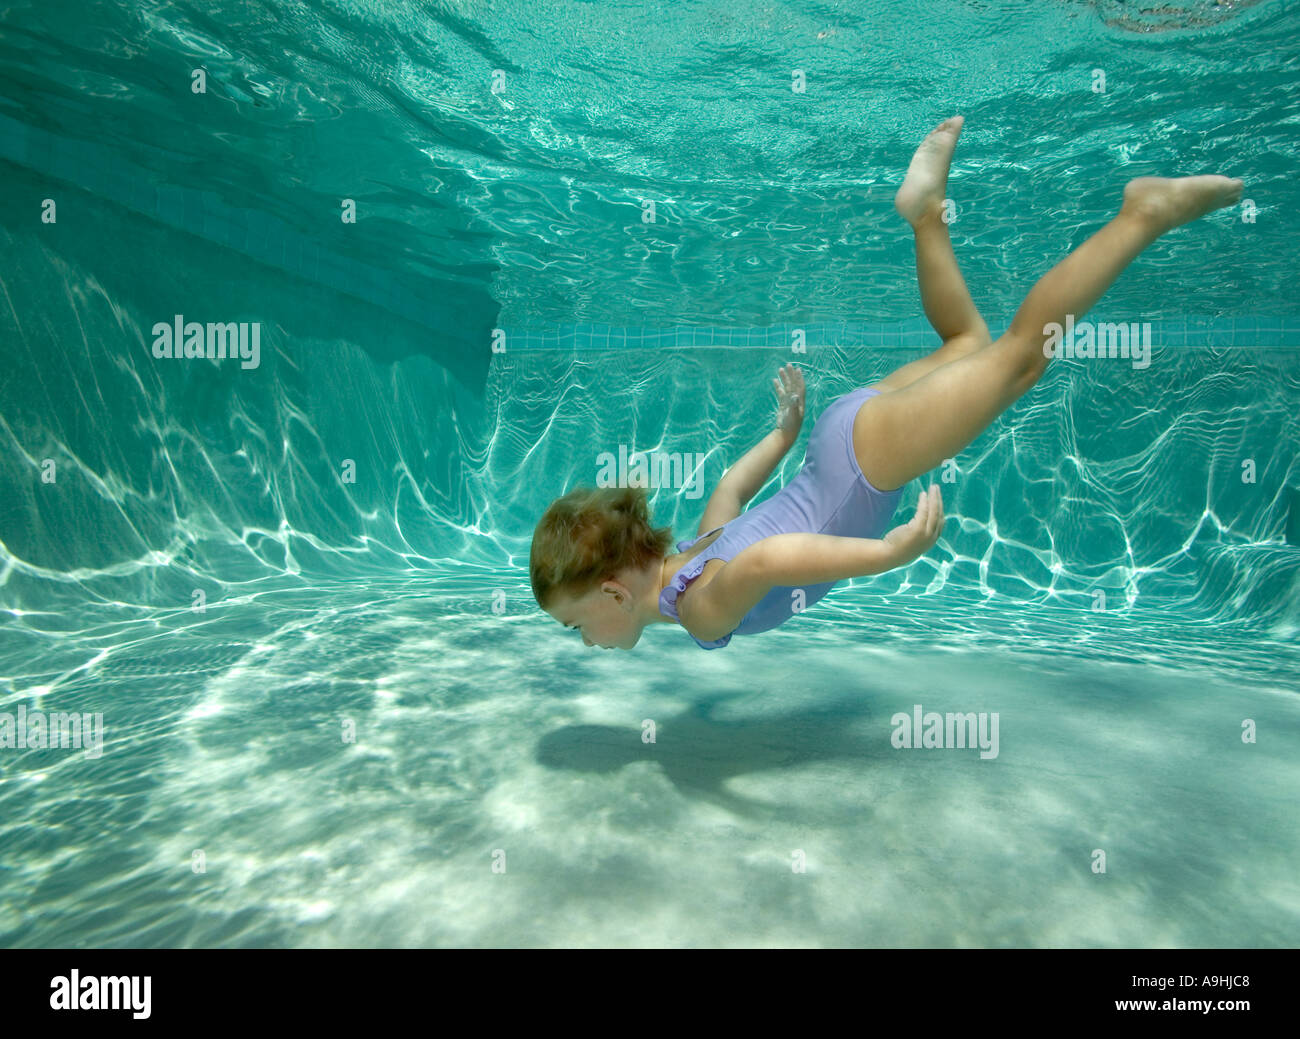 Jeune fille sous l'eau plongée en piscine Banque D'Images